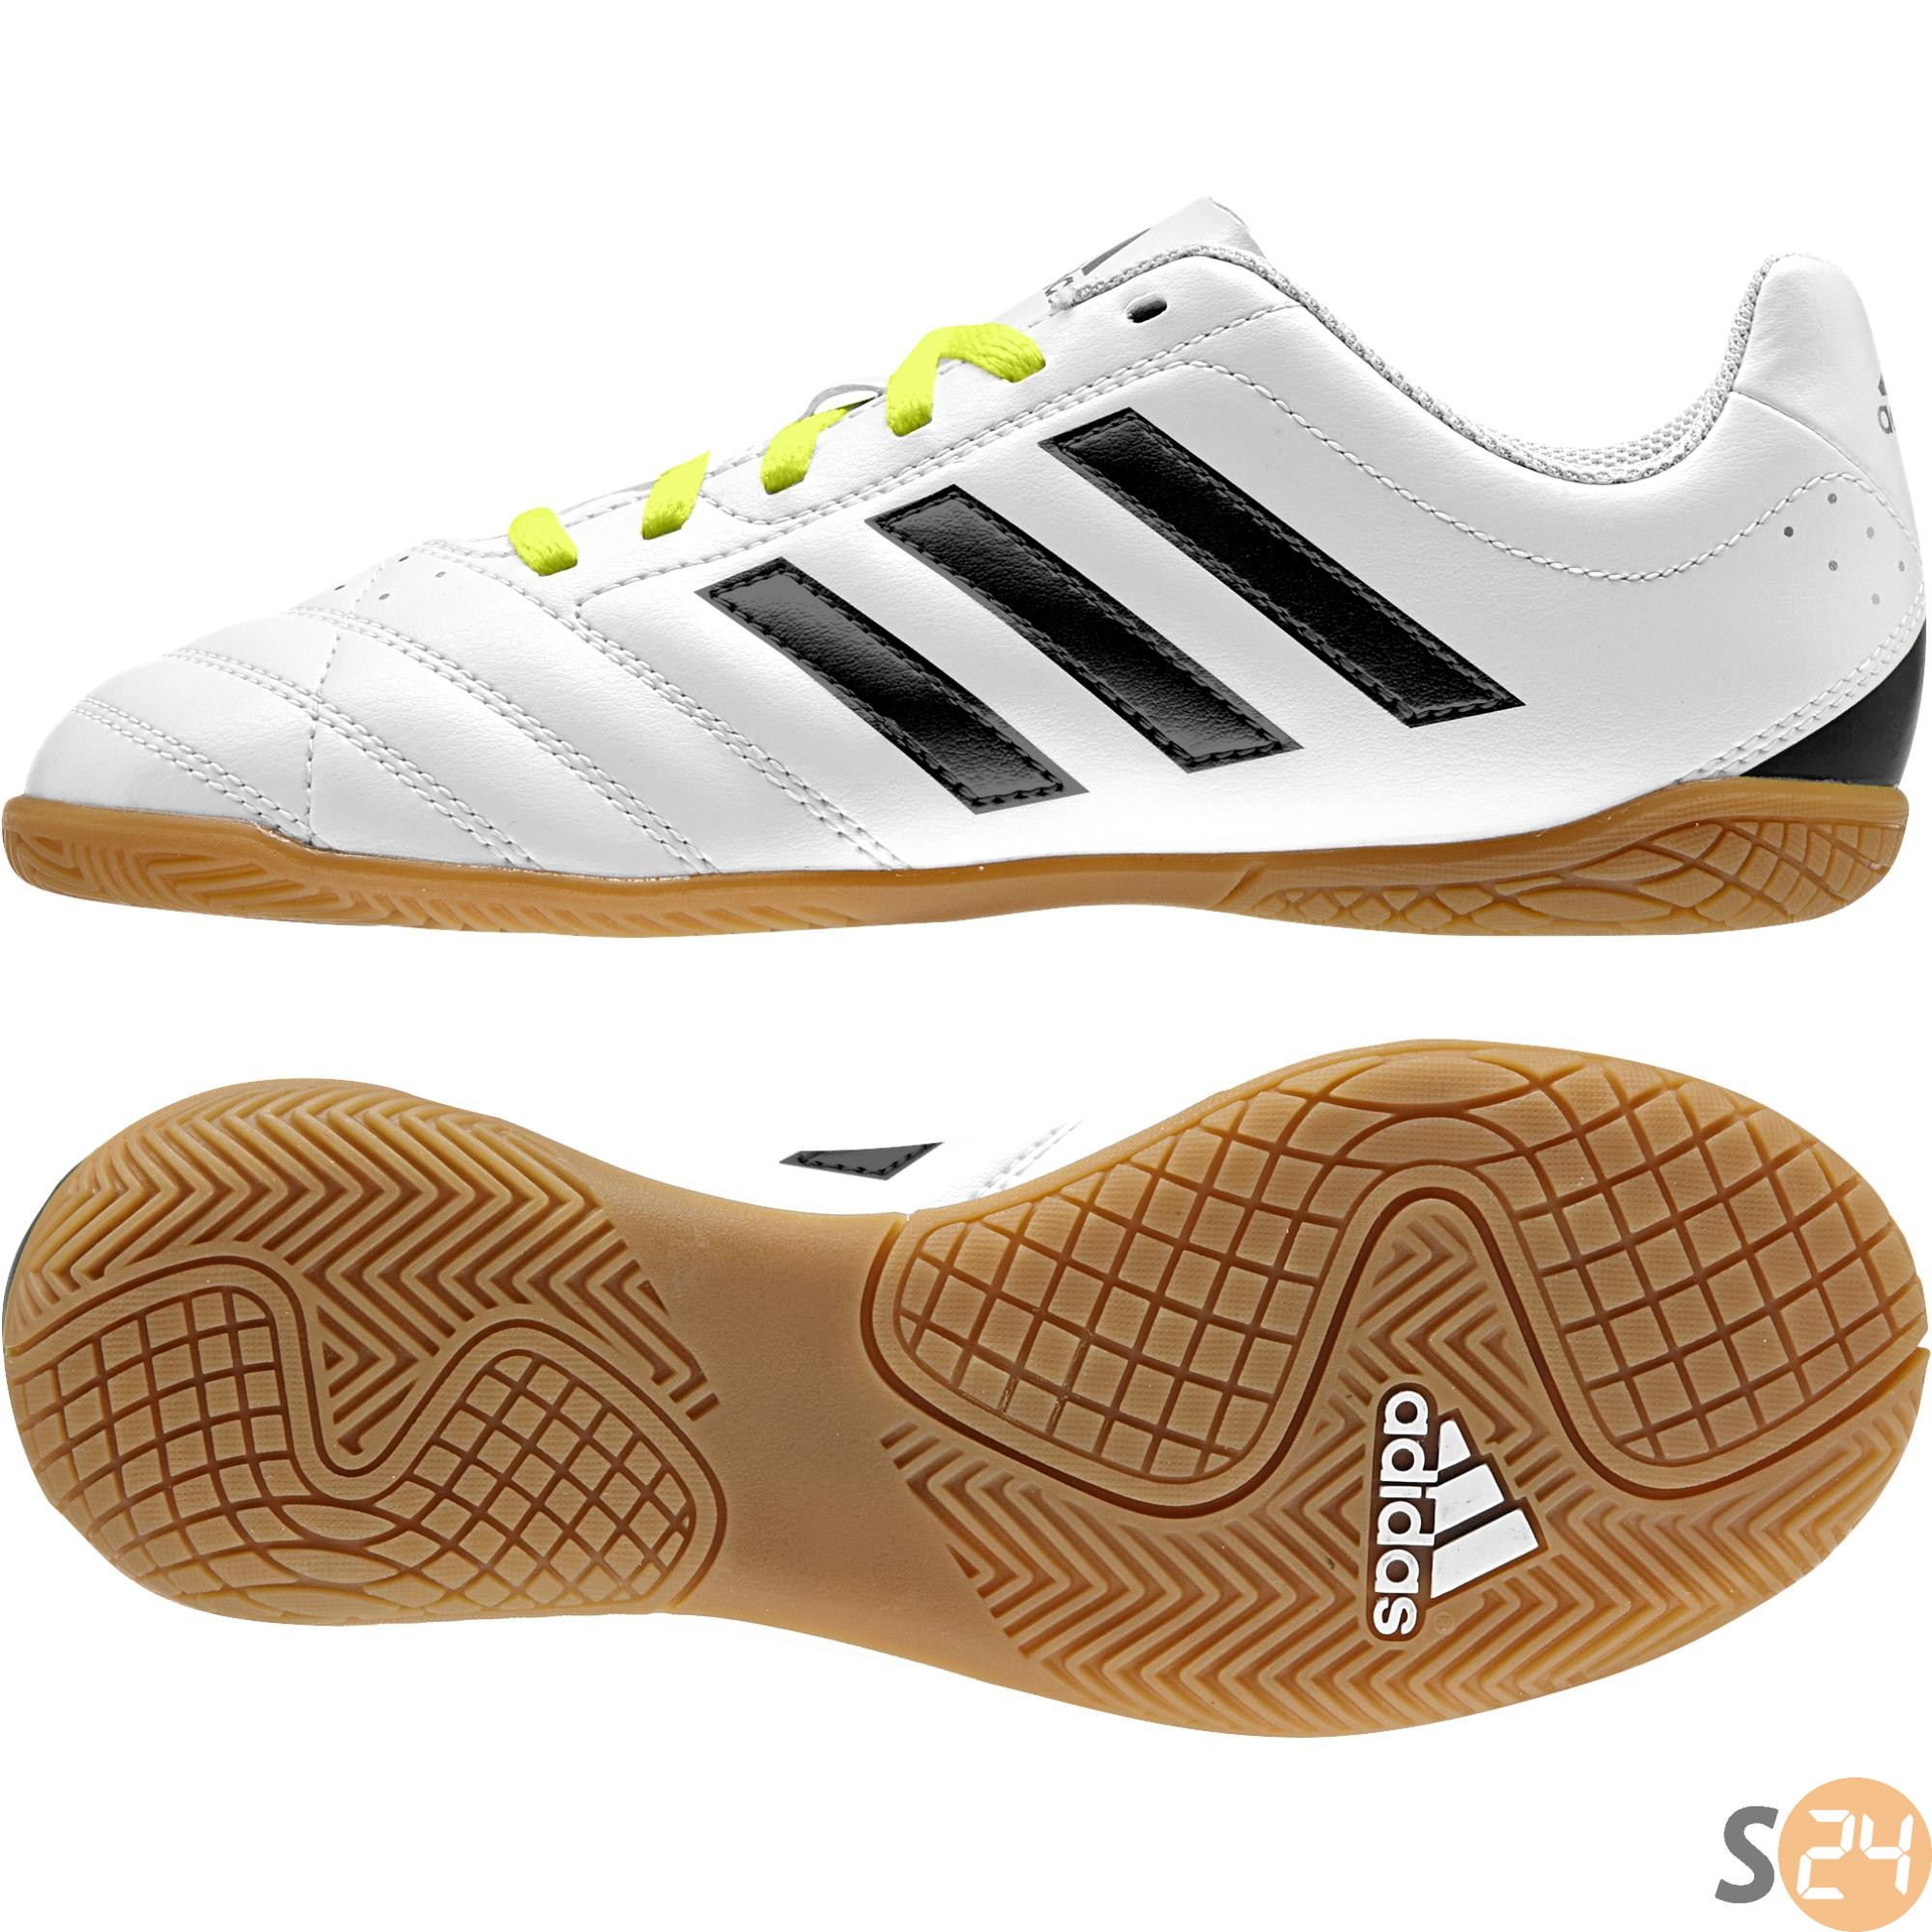 Adidas Foci cipők Goletto v in j B27087